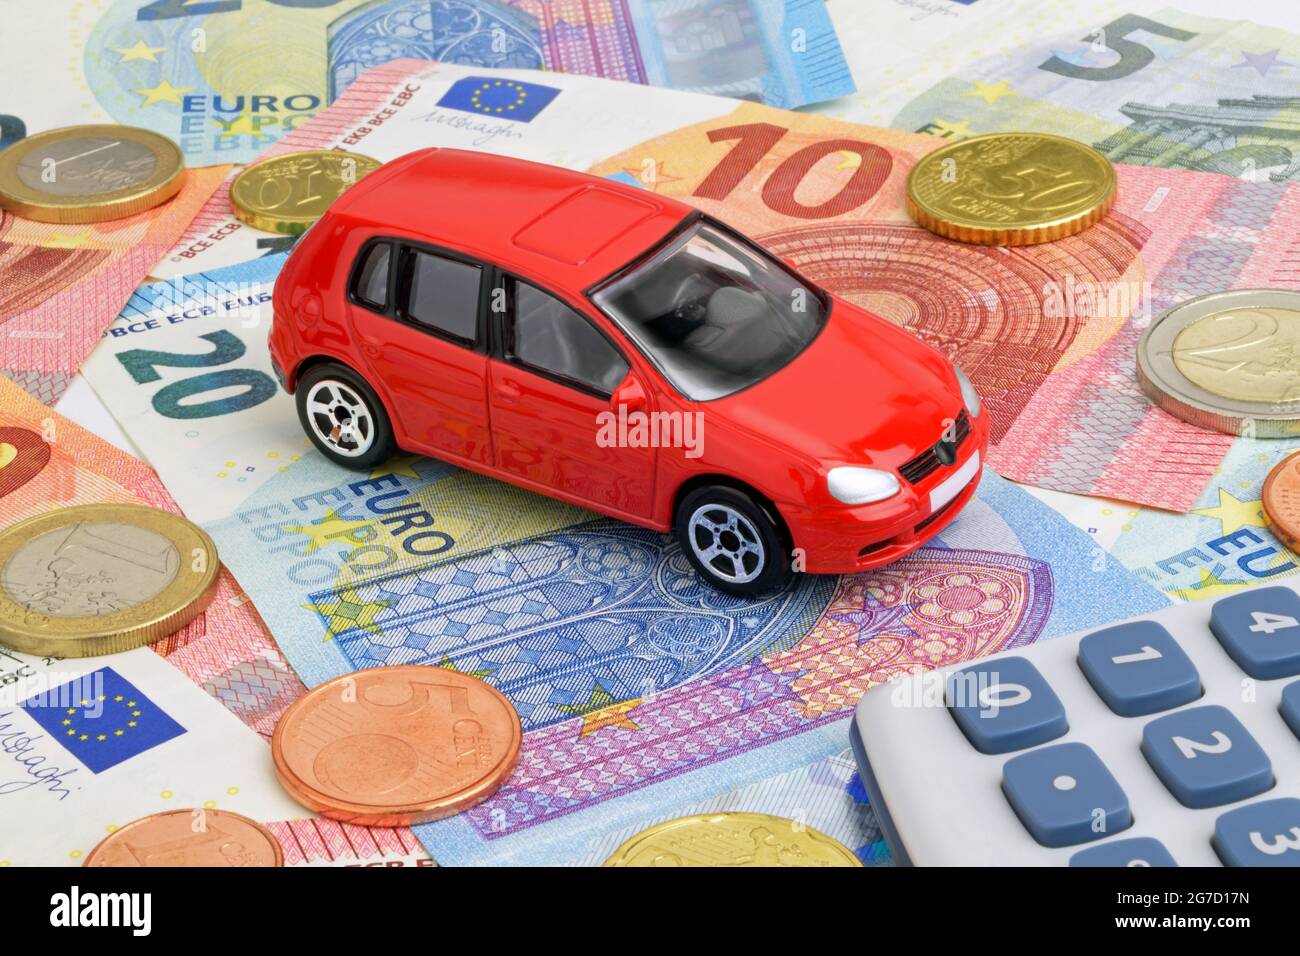 Ein rotes Auto auf Euro-Geldscheinen und -Münzen, das die Fahrzeugfinanzierung darstellt. Stockfoto